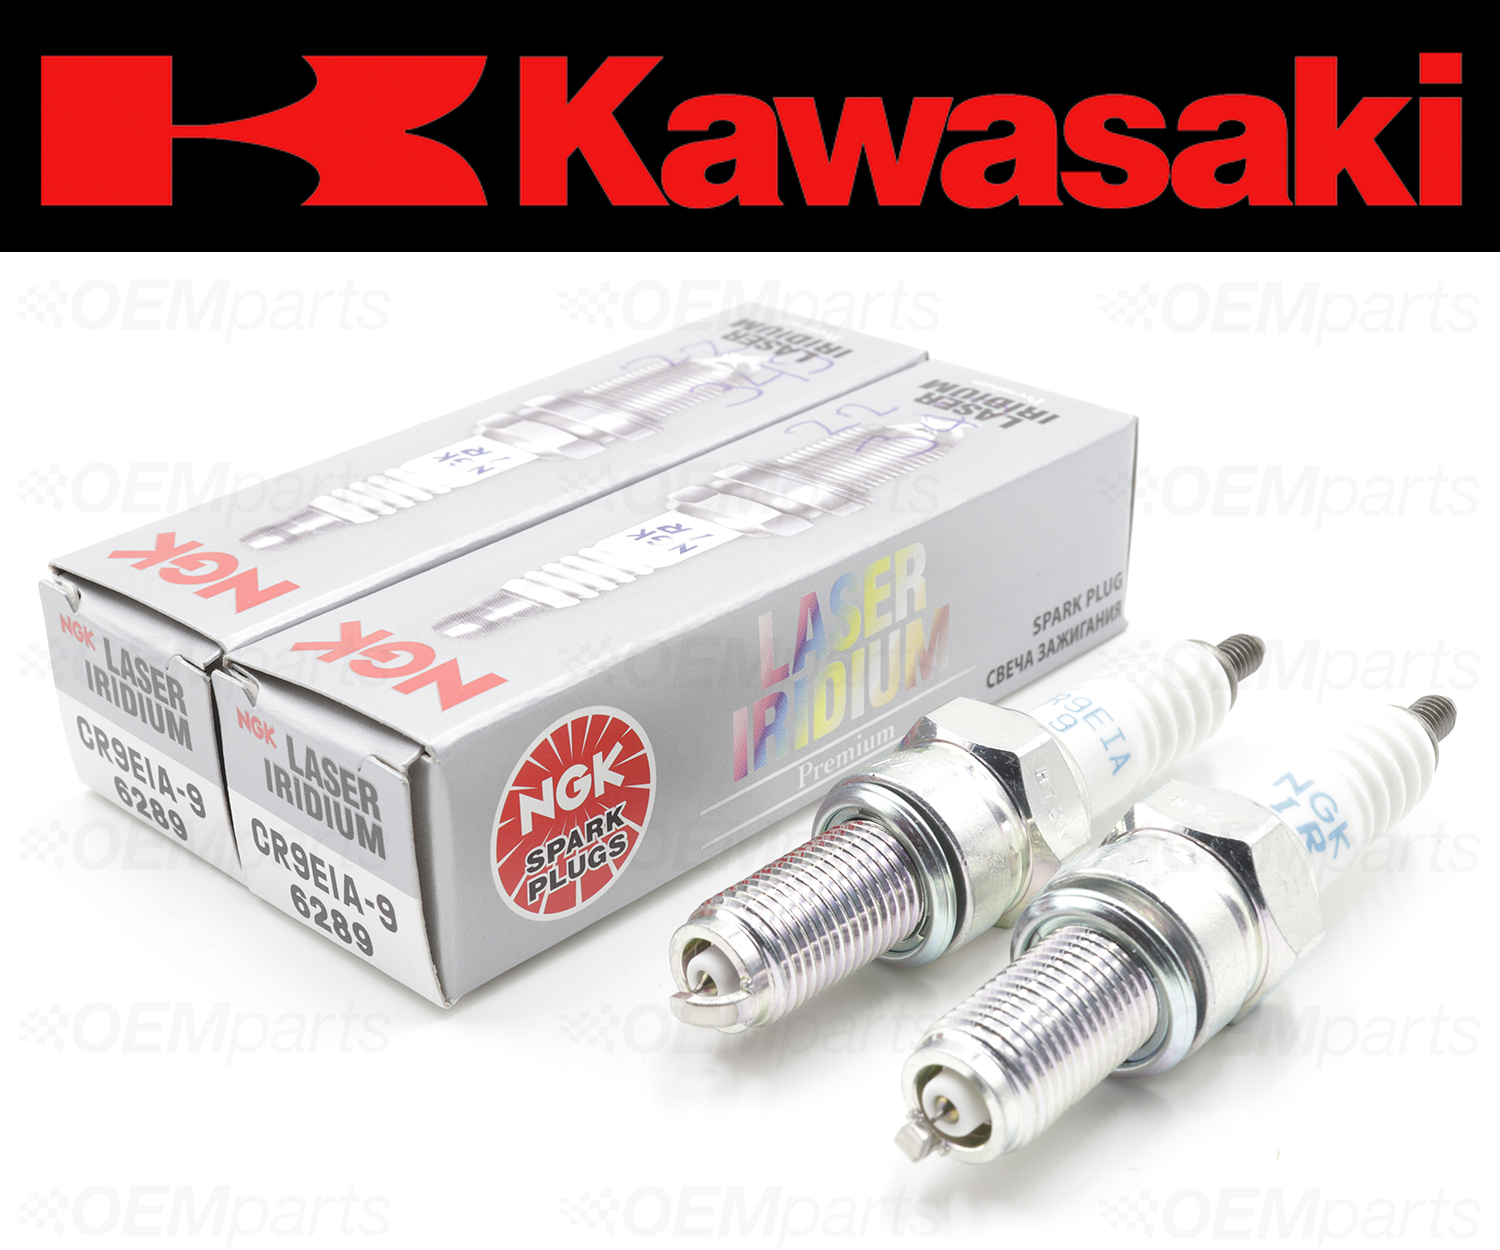 Kawasaki Spark Plug Chart